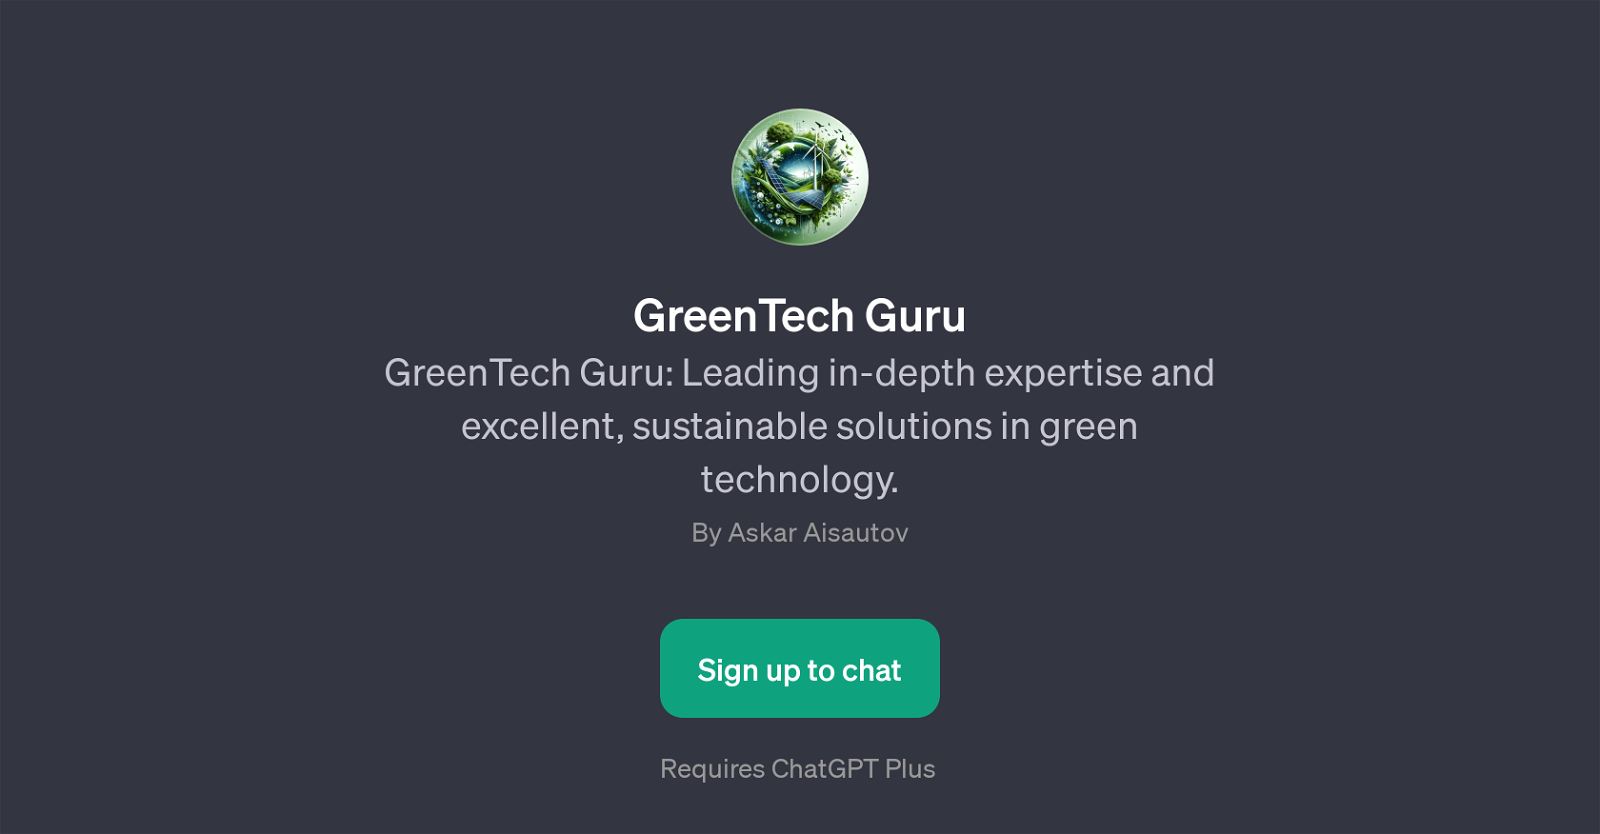 GreenTech Guru website